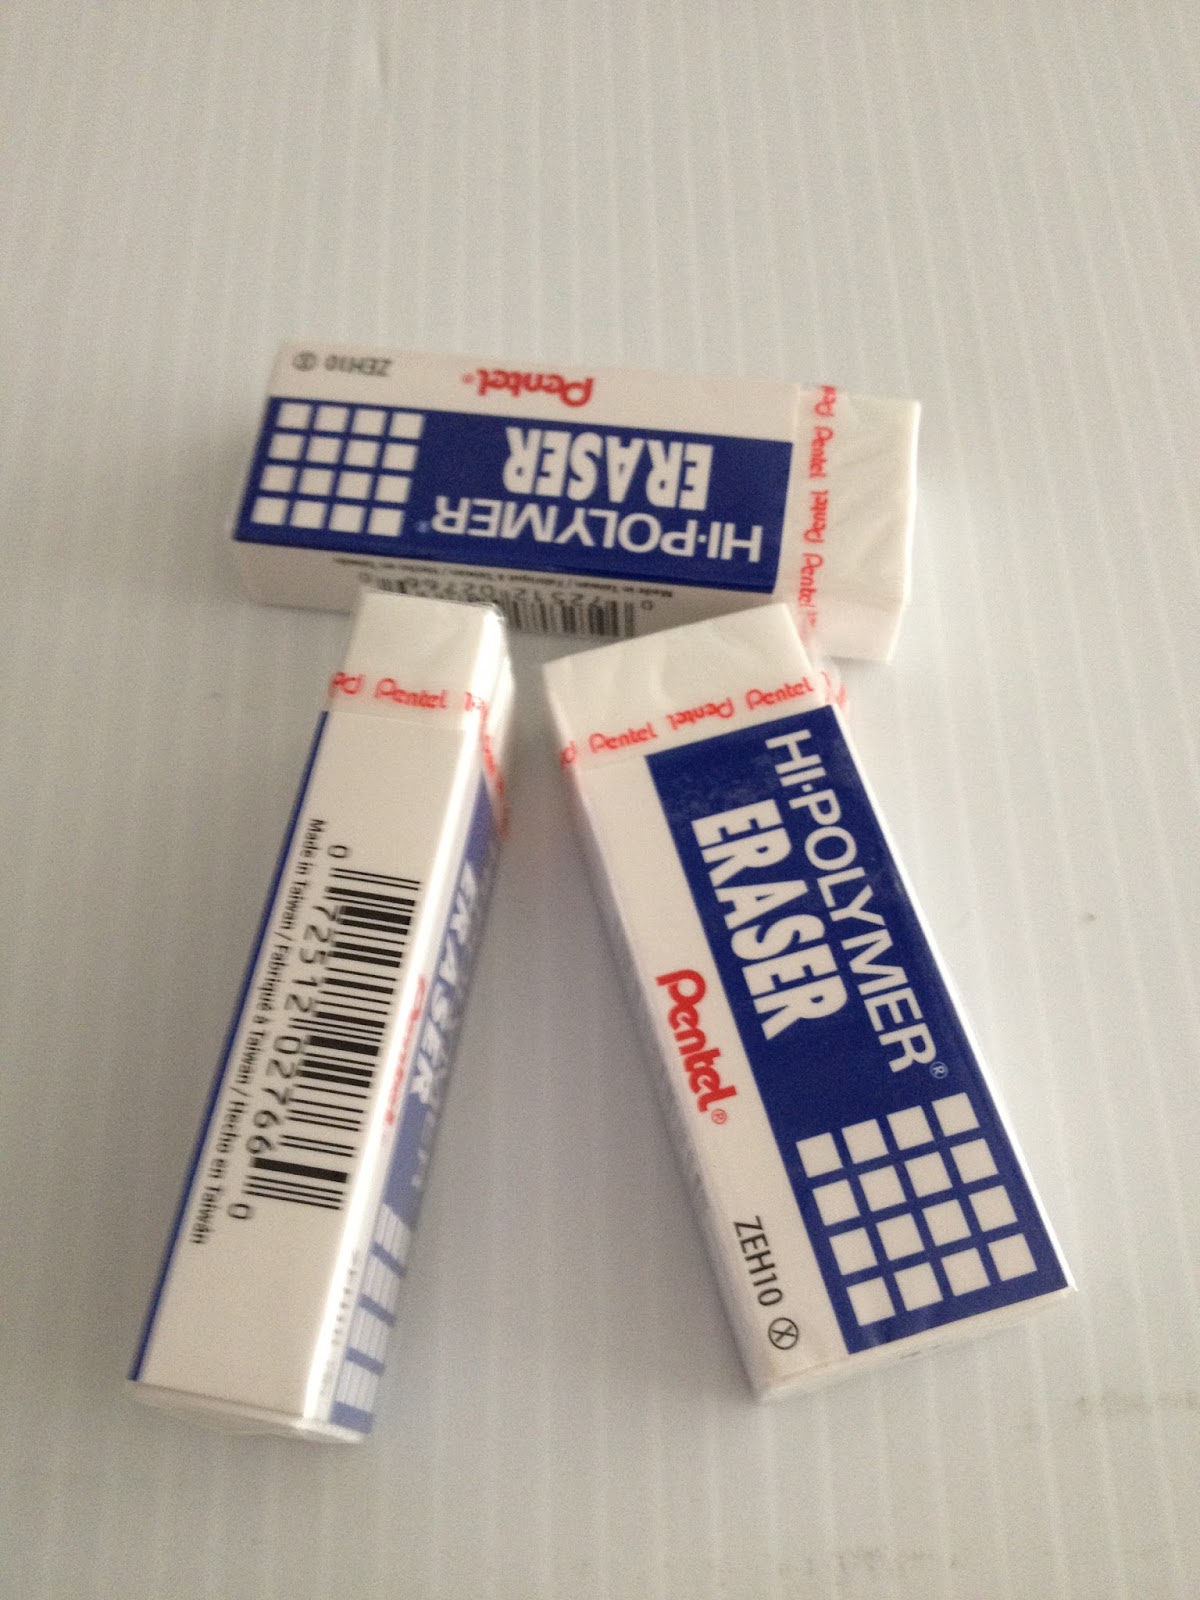 Pentel Eraser Caps, Hi-Polymer, 10 Pack - 10 erasers